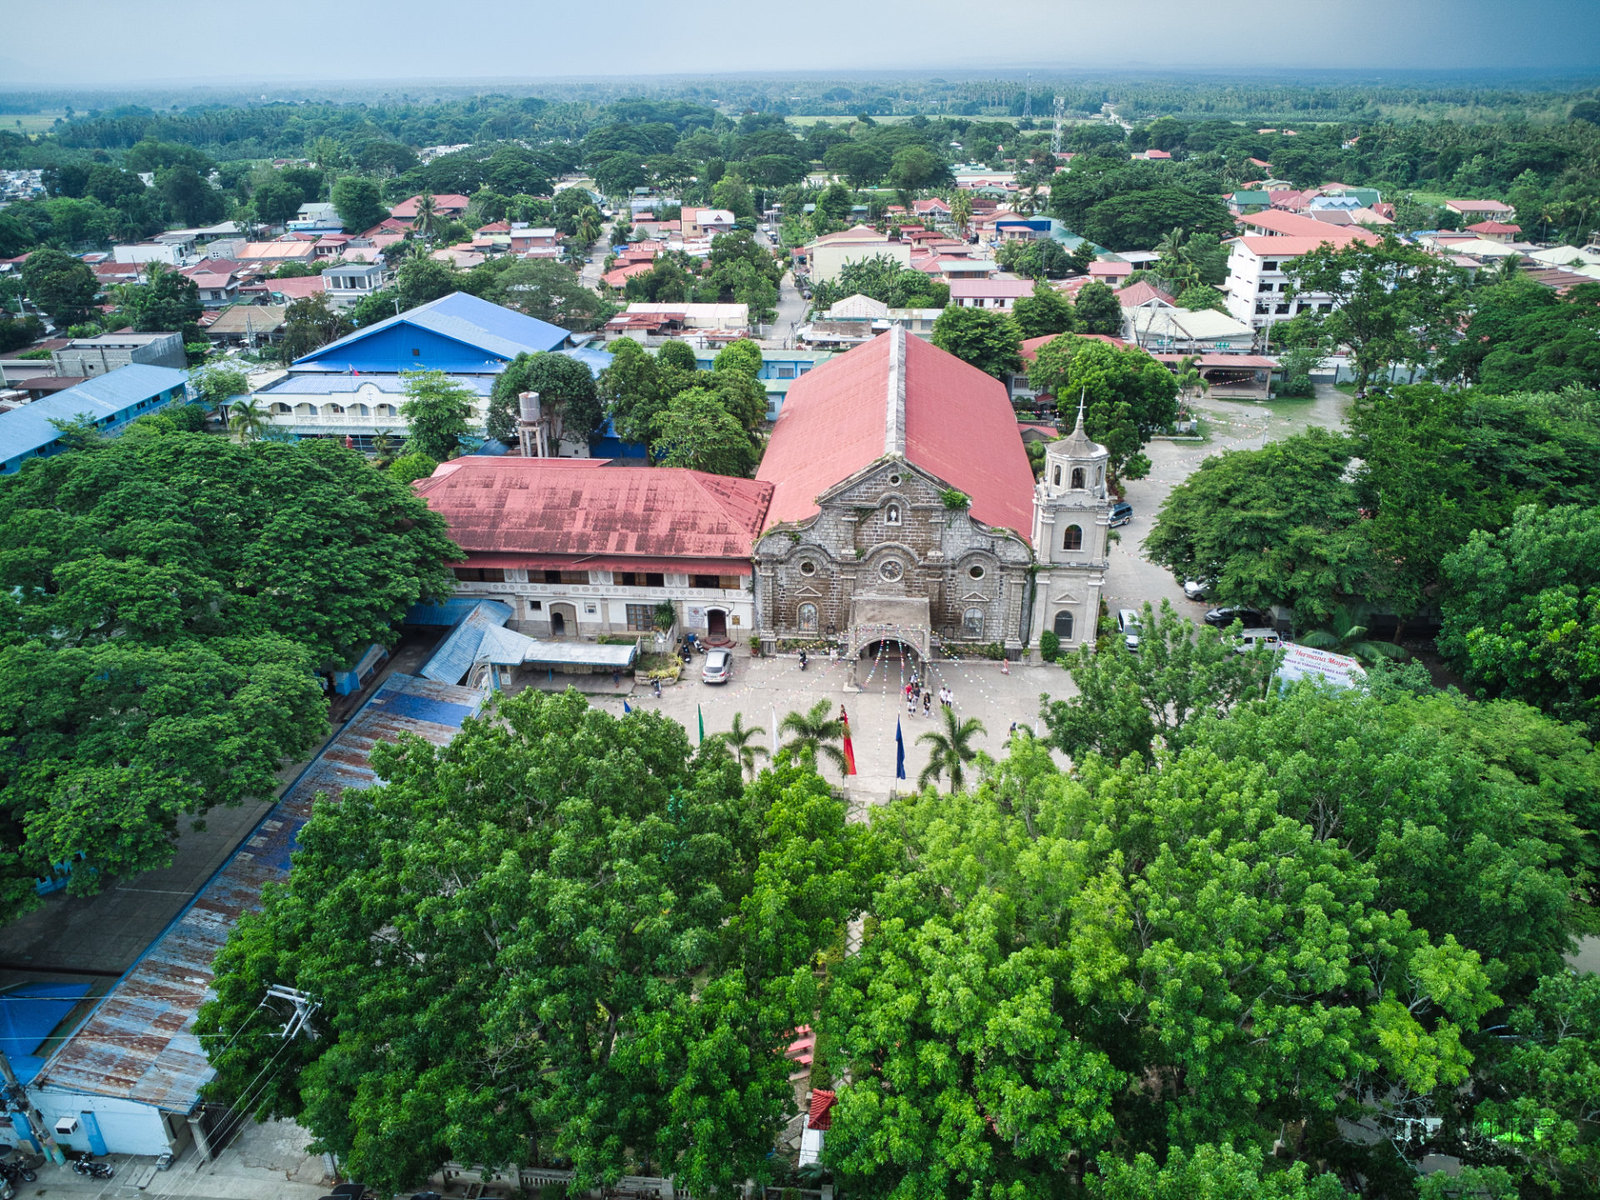 The San Juan Batangas Poblacion with the San Juan Nepomuceno Parish at the center.